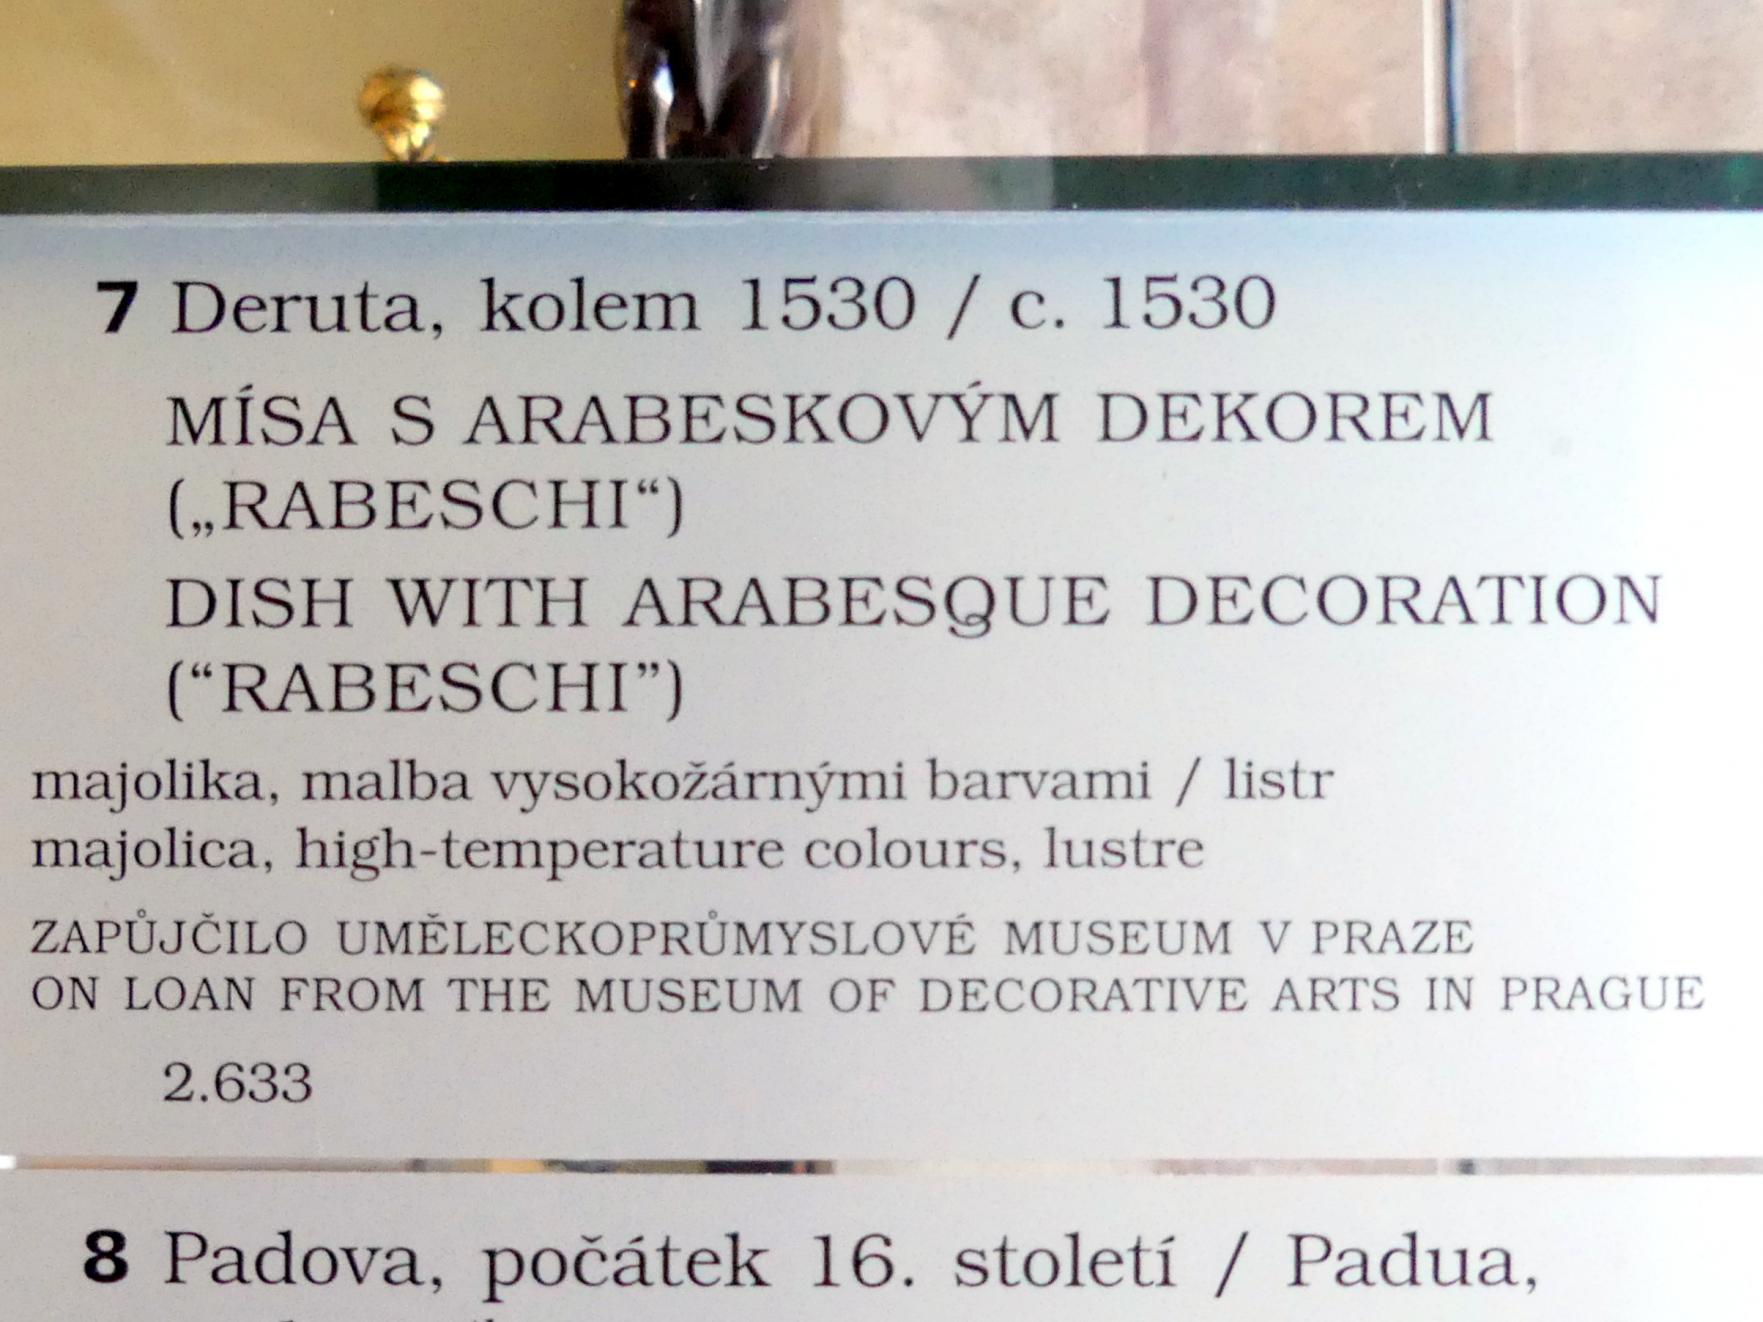 Schale mit Arabeske-Dekor (Rabeschi), Prag, Nationalgalerie im Palais Sternberg, 1. Obergeschoss, Saal 7, um 1530, Bild 2/2